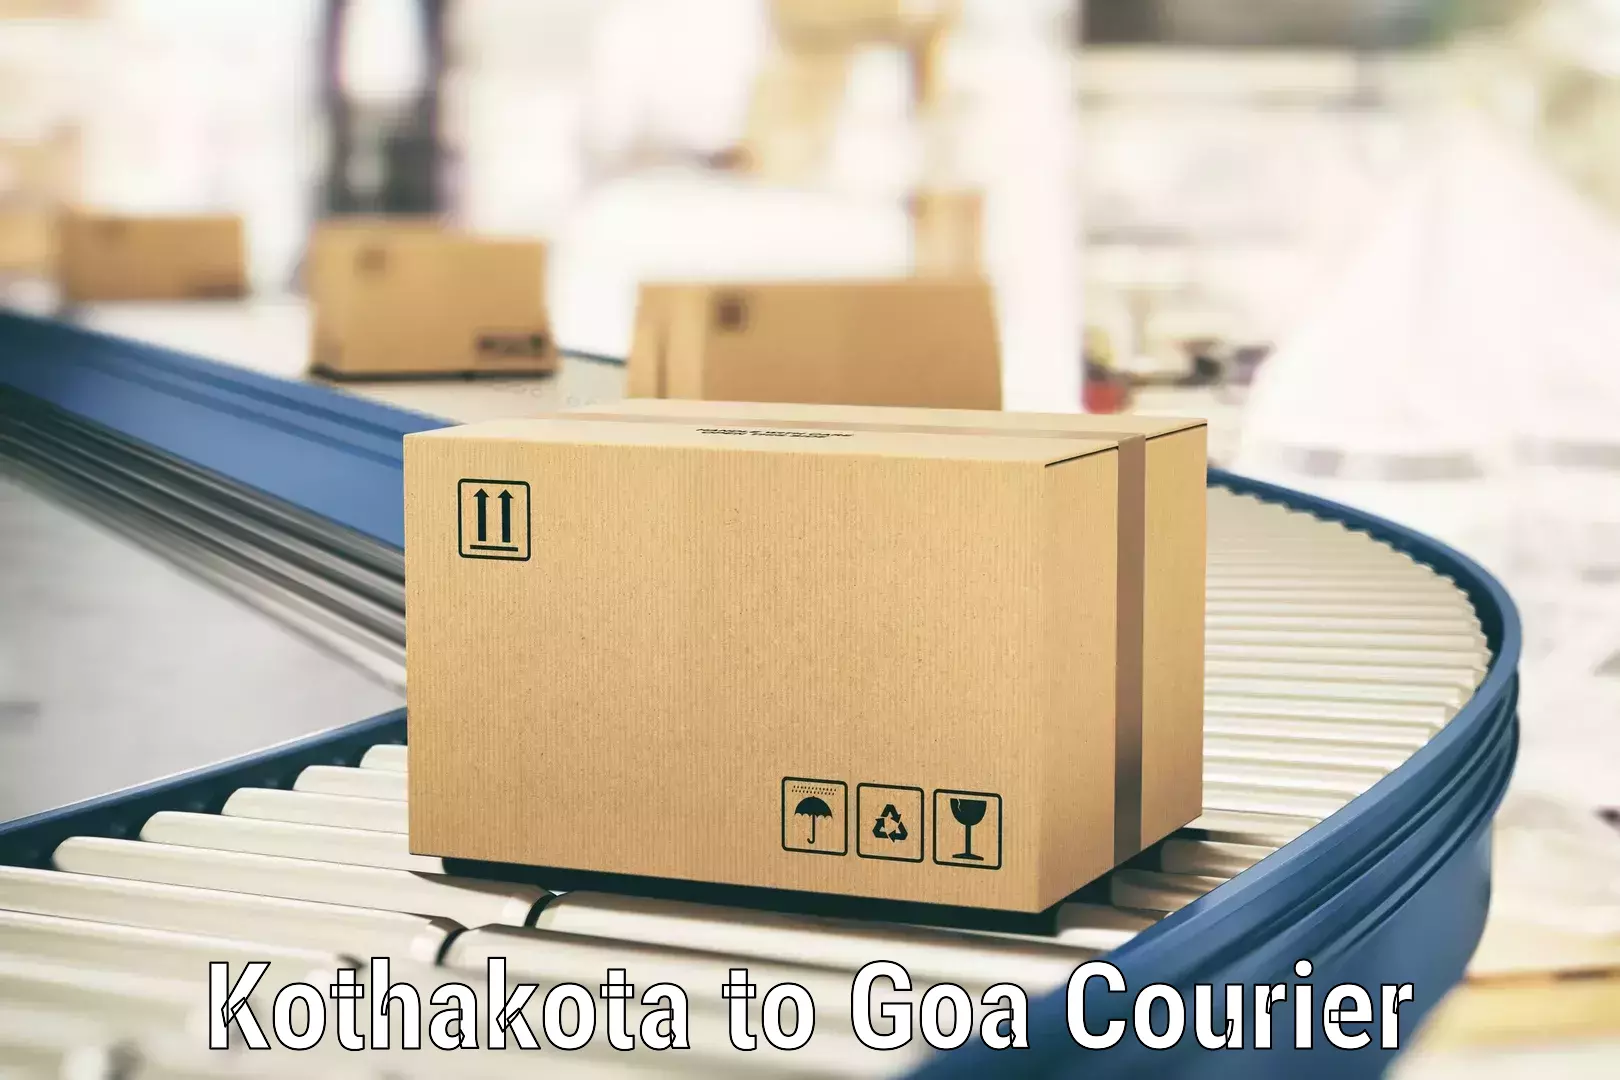 Expedited shipping methods Kothakota to Bicholim